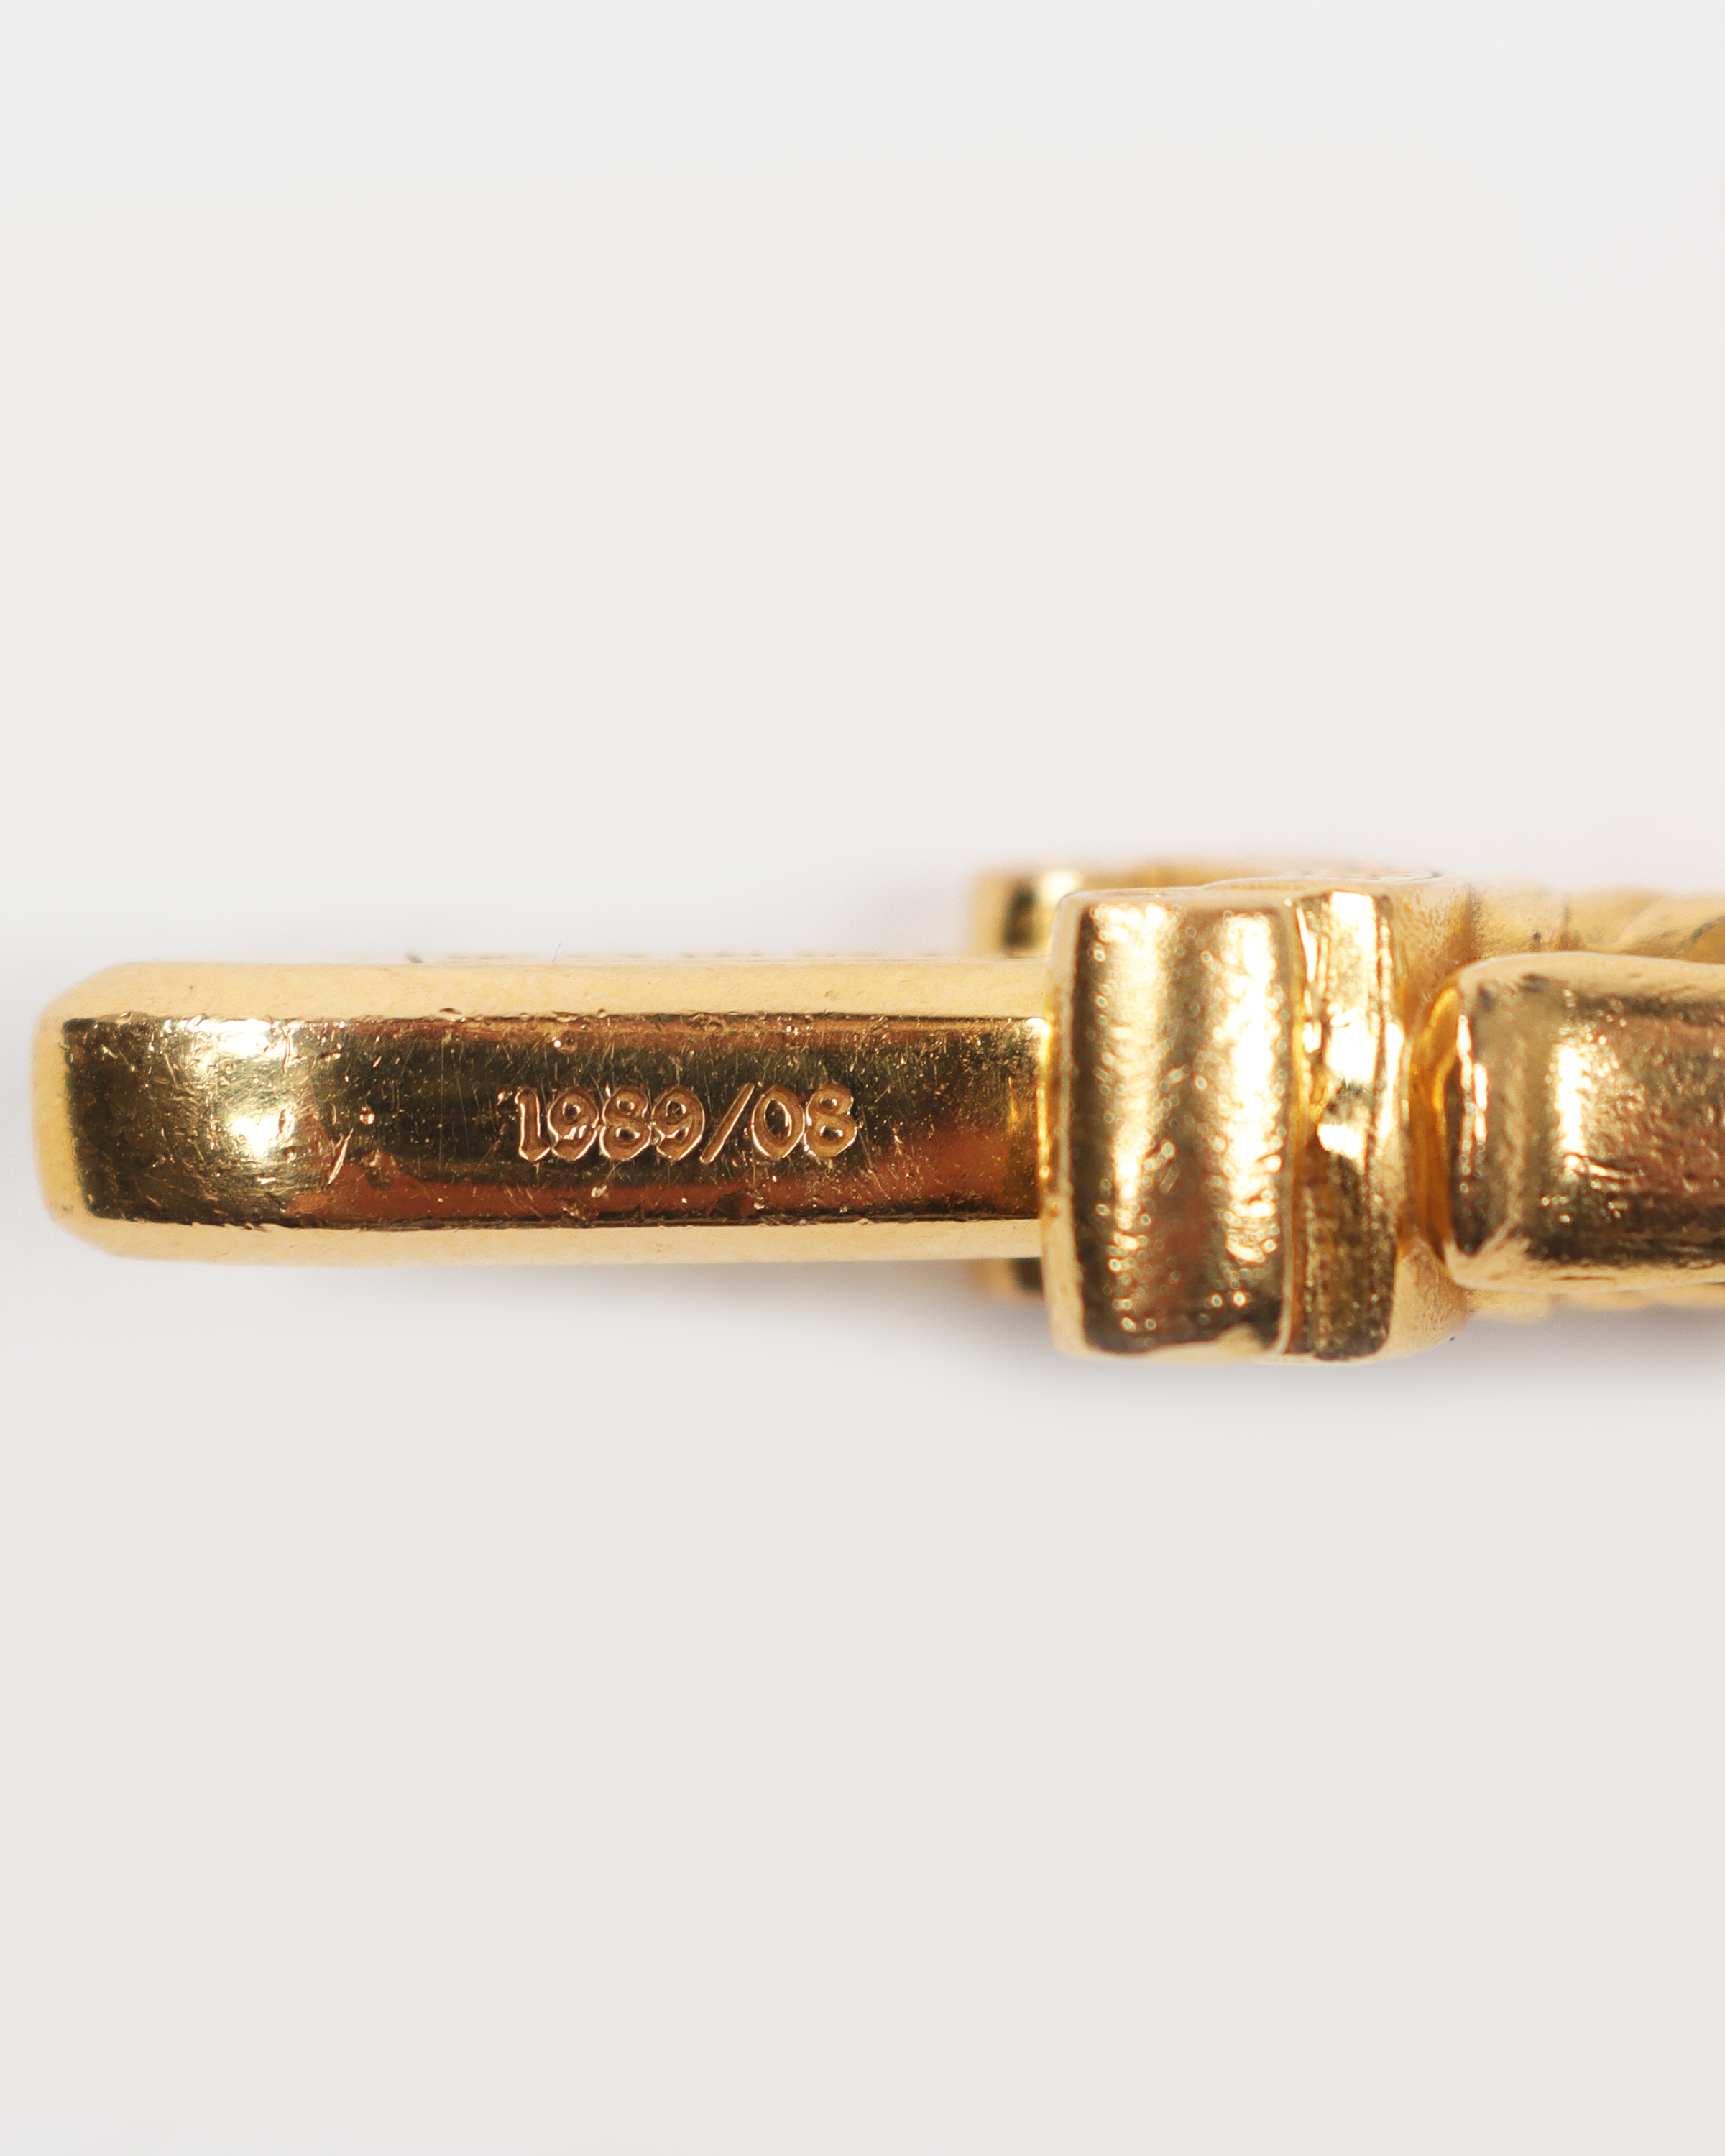 22k Gold Dagger Pendant & Necklace